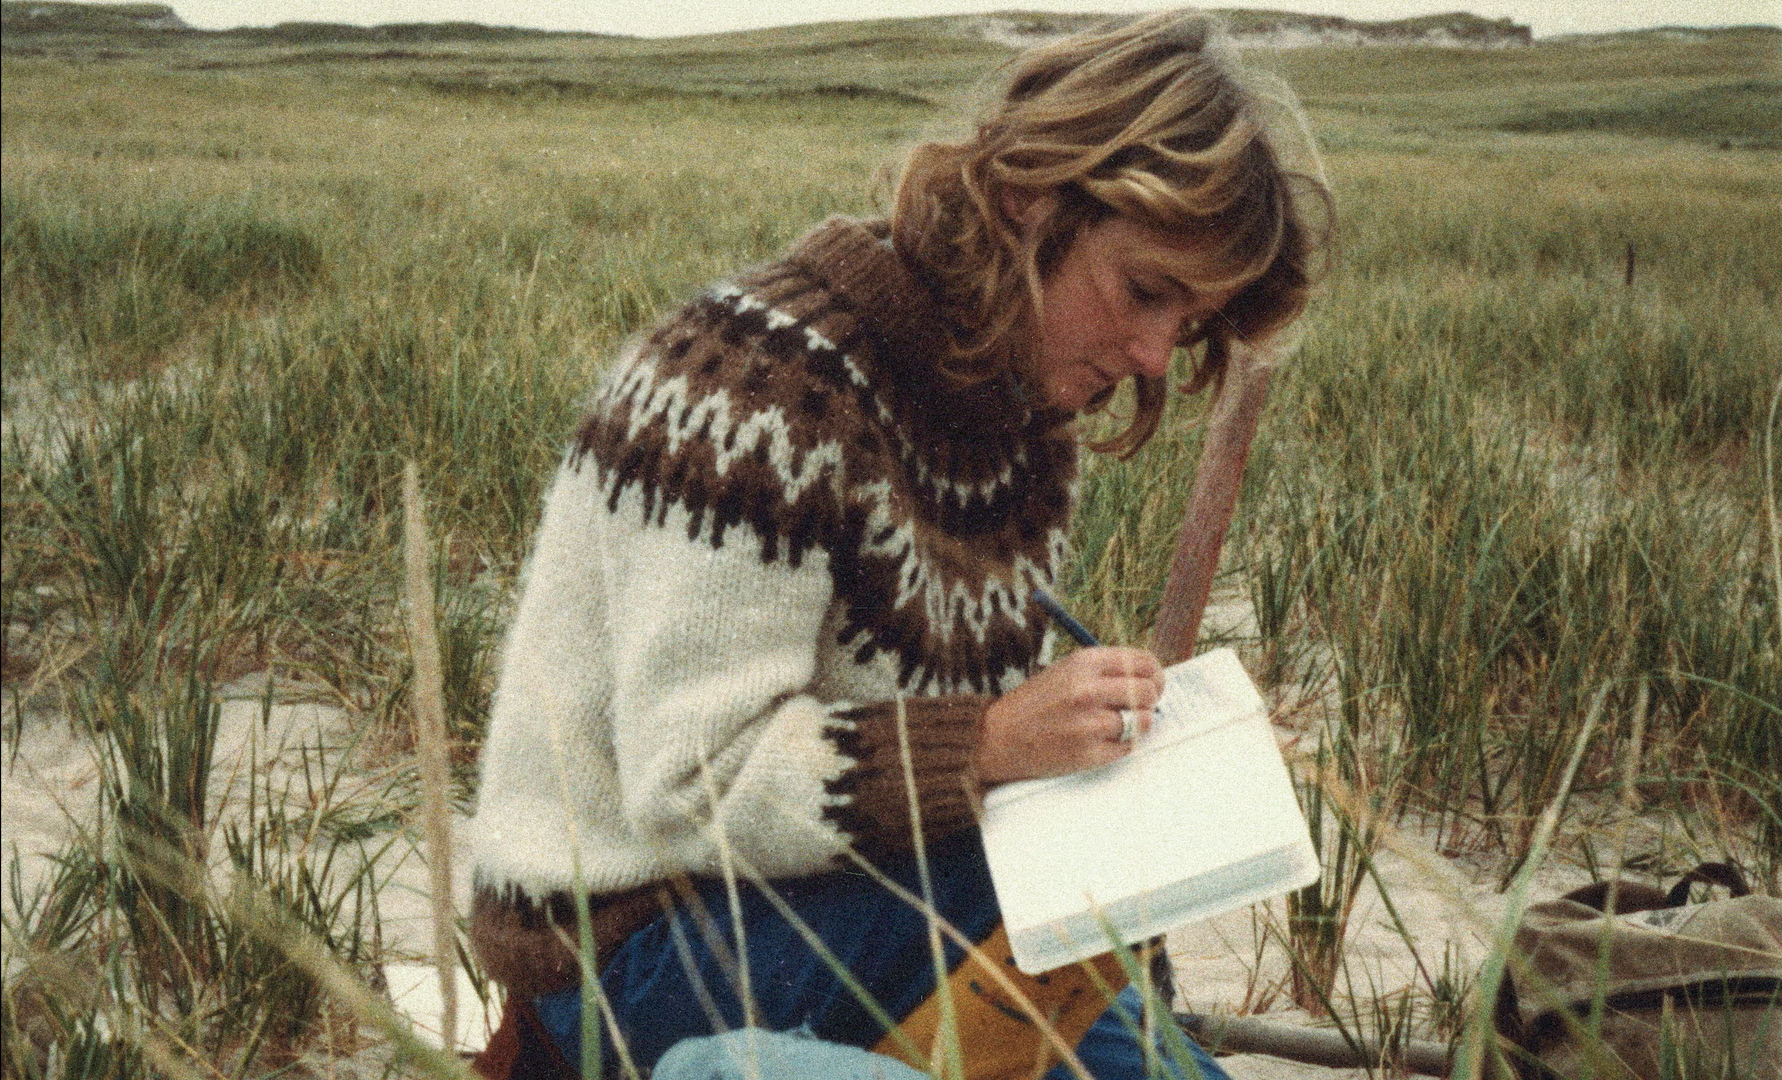 Vrouw met wollen trui schrijft in een boek op het gras